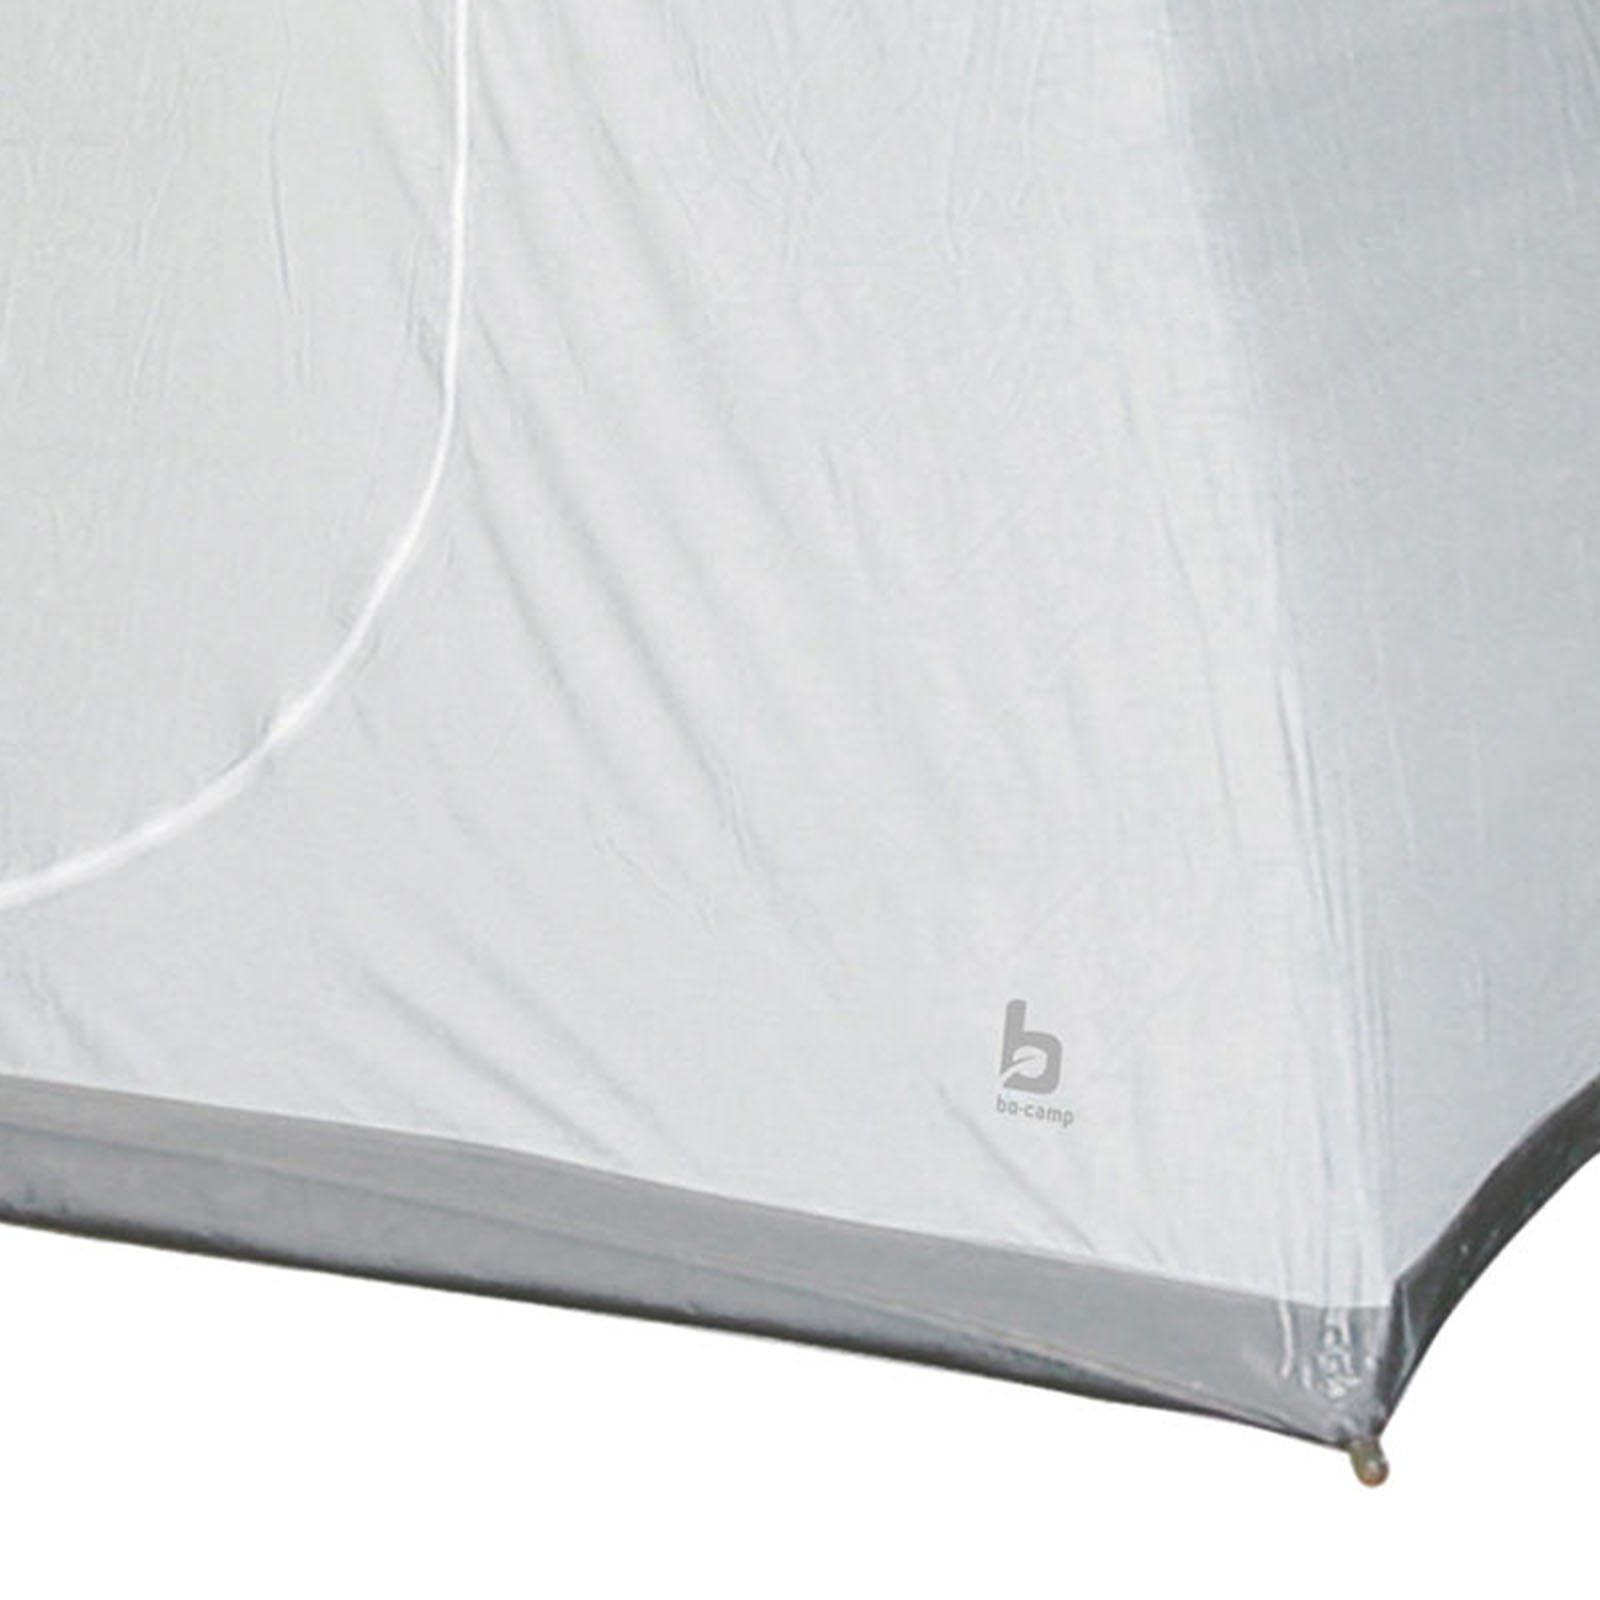 Vorzelt 200x135x175 Kabine Für Zelt Universal Bo-Camp Innenzelt Innenzelt Camping, Schlaf